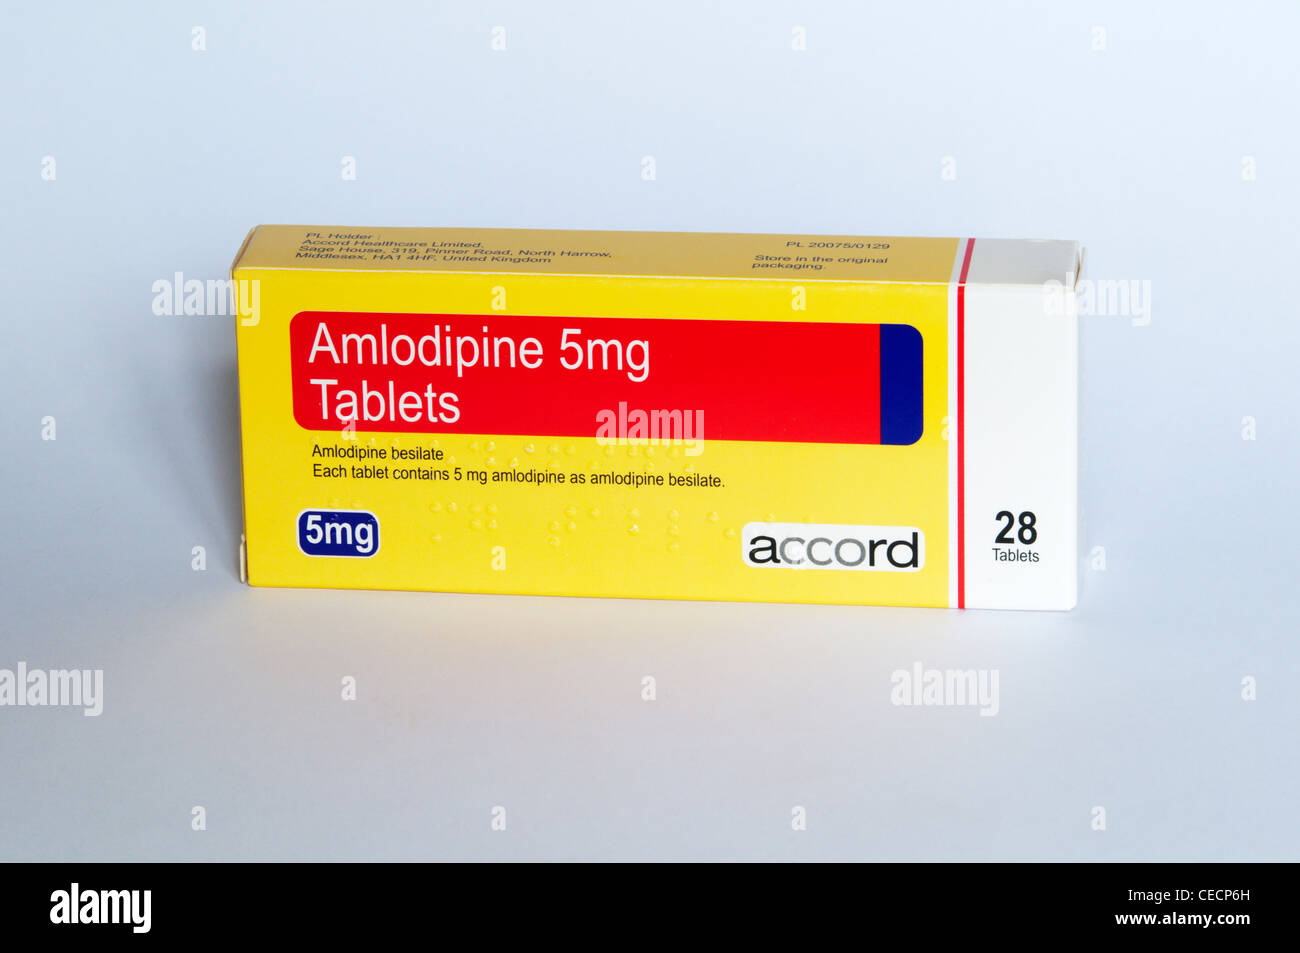 Амлодипин когда принимать утром или вечером лучше. Амлодипин Кетоконазол взаимодействие. Амлодипин 10 мг инструкция картинки.